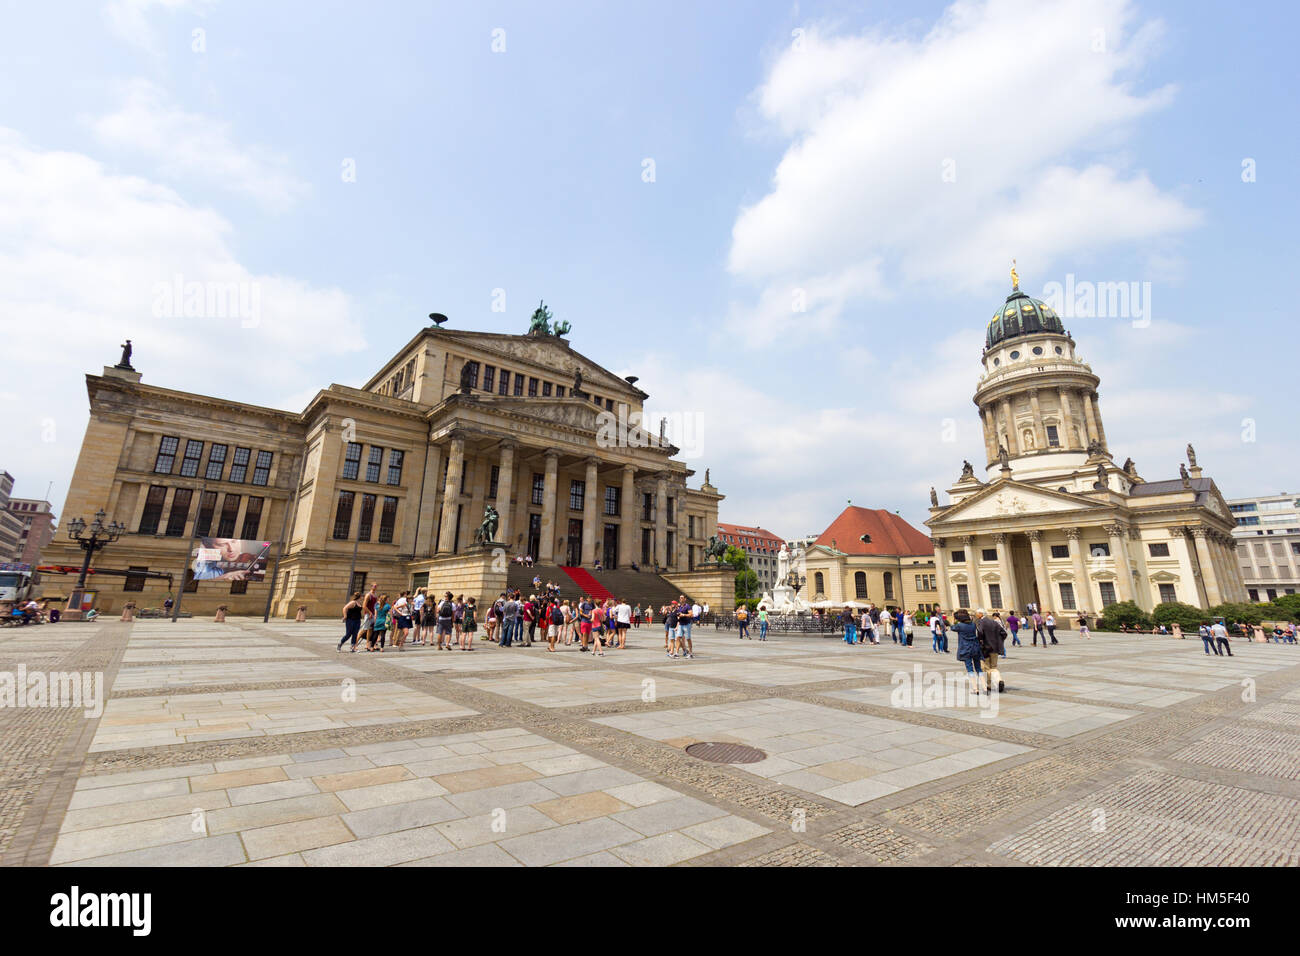 Berlino, Germania - 23 Maggio: Cattedrale tedesca e la Sala Concerti sulla Piazza Gendarmenmarkt il 23 maggio 2014 a Berlino, Germania. La piazza è stata creare Foto Stock